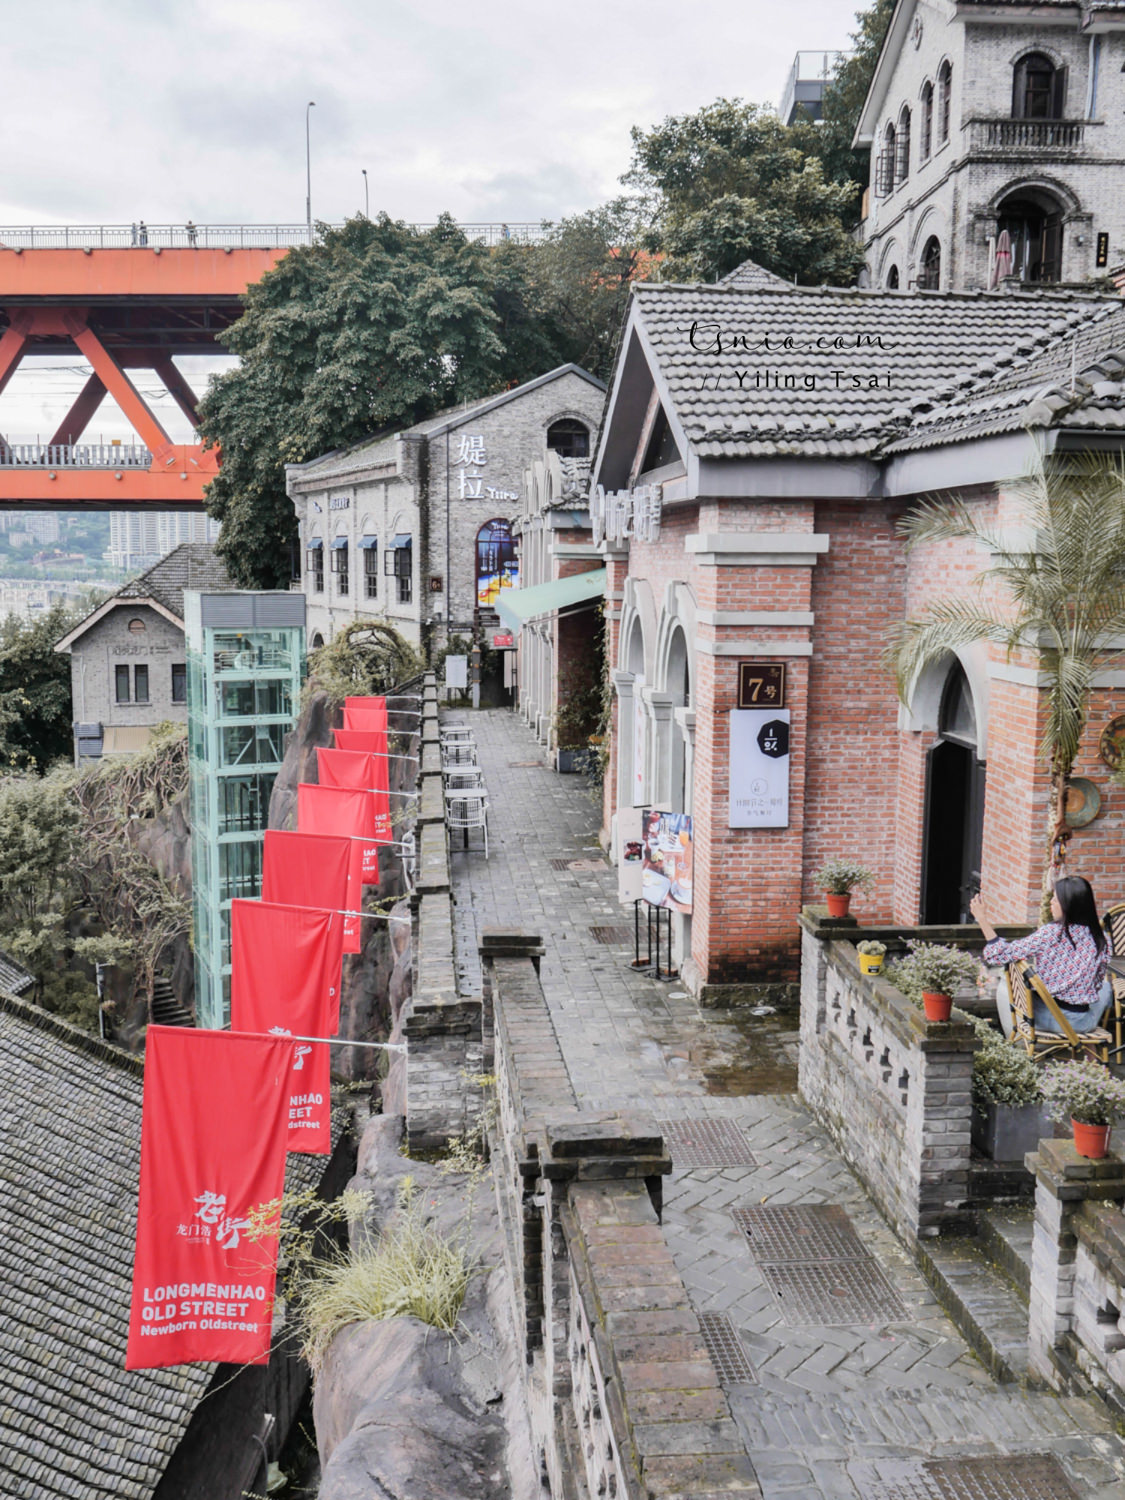 中國重慶景點總整理 網紅城市打卡景點推薦